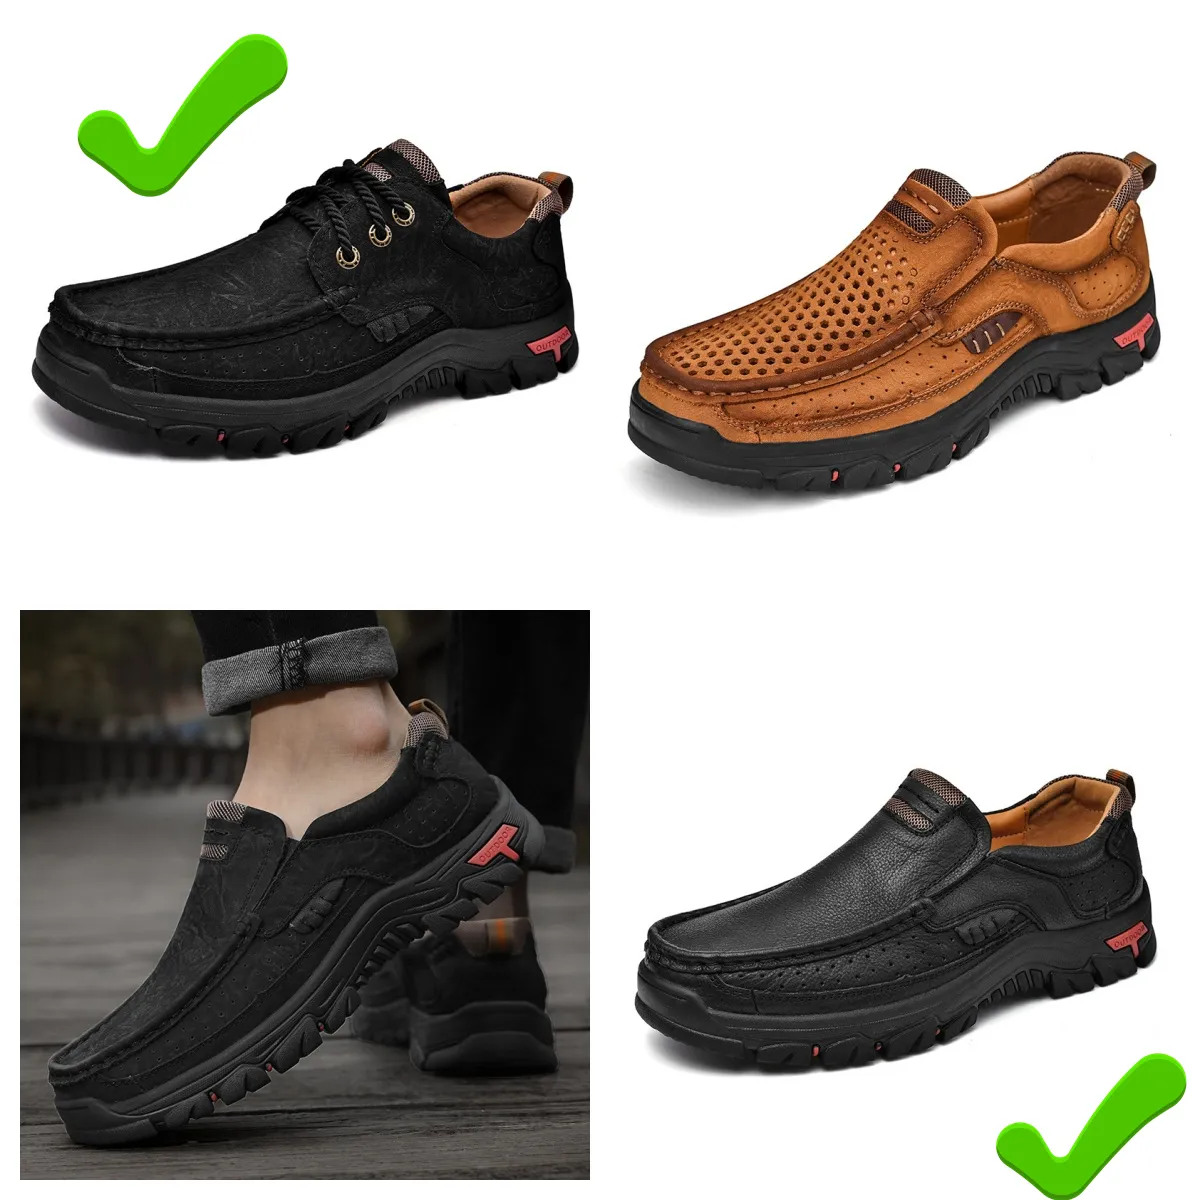 Nova venda sapatos de couro homens couro genuíno mocassins oversized sapatos de couro casuais sapatos de caminhada GAI MASCULINO de alta qualidade bigsize designer de luxo casual